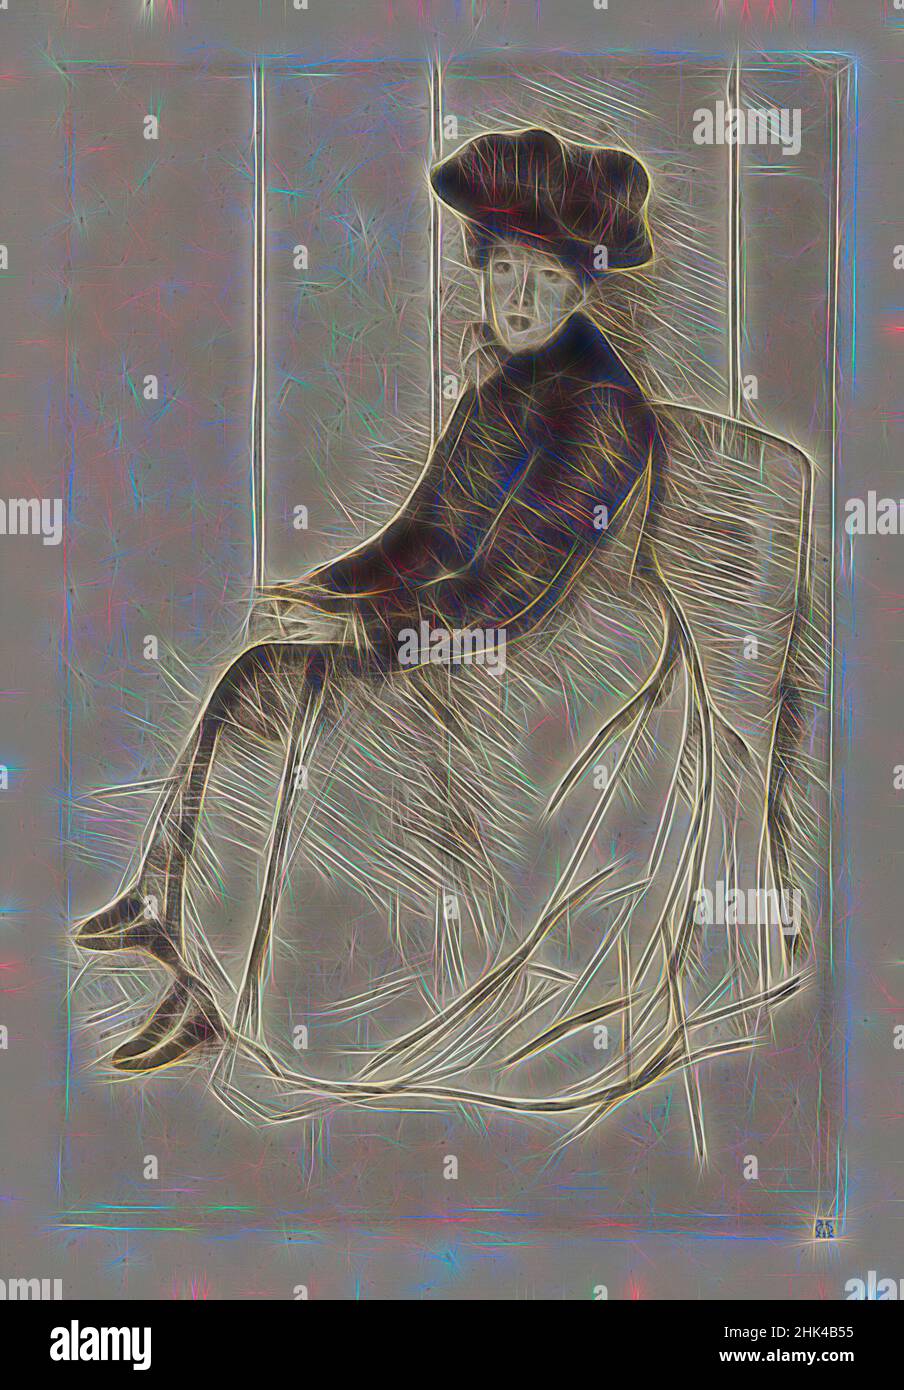 Inspiré par Reflection, Mary Cassatt, américaine, 1844-1926, Drypoint sur papier verdâtre, env. 1890, 10 1/4 x 6 3/4 po, 26 x 17,2 cm, femme, personnage assis, femme, réimaginé par Artotop. L'art classique réinventé avec une touche moderne. Conception de lumière chaleureuse et gaie, de luminosité et de rayonnement de lumière. La photographie s'inspire du surréalisme et du futurisme, embrassant l'énergie dynamique de la technologie moderne, du mouvement, de la vitesse et révolutionne la culture Banque D'Images